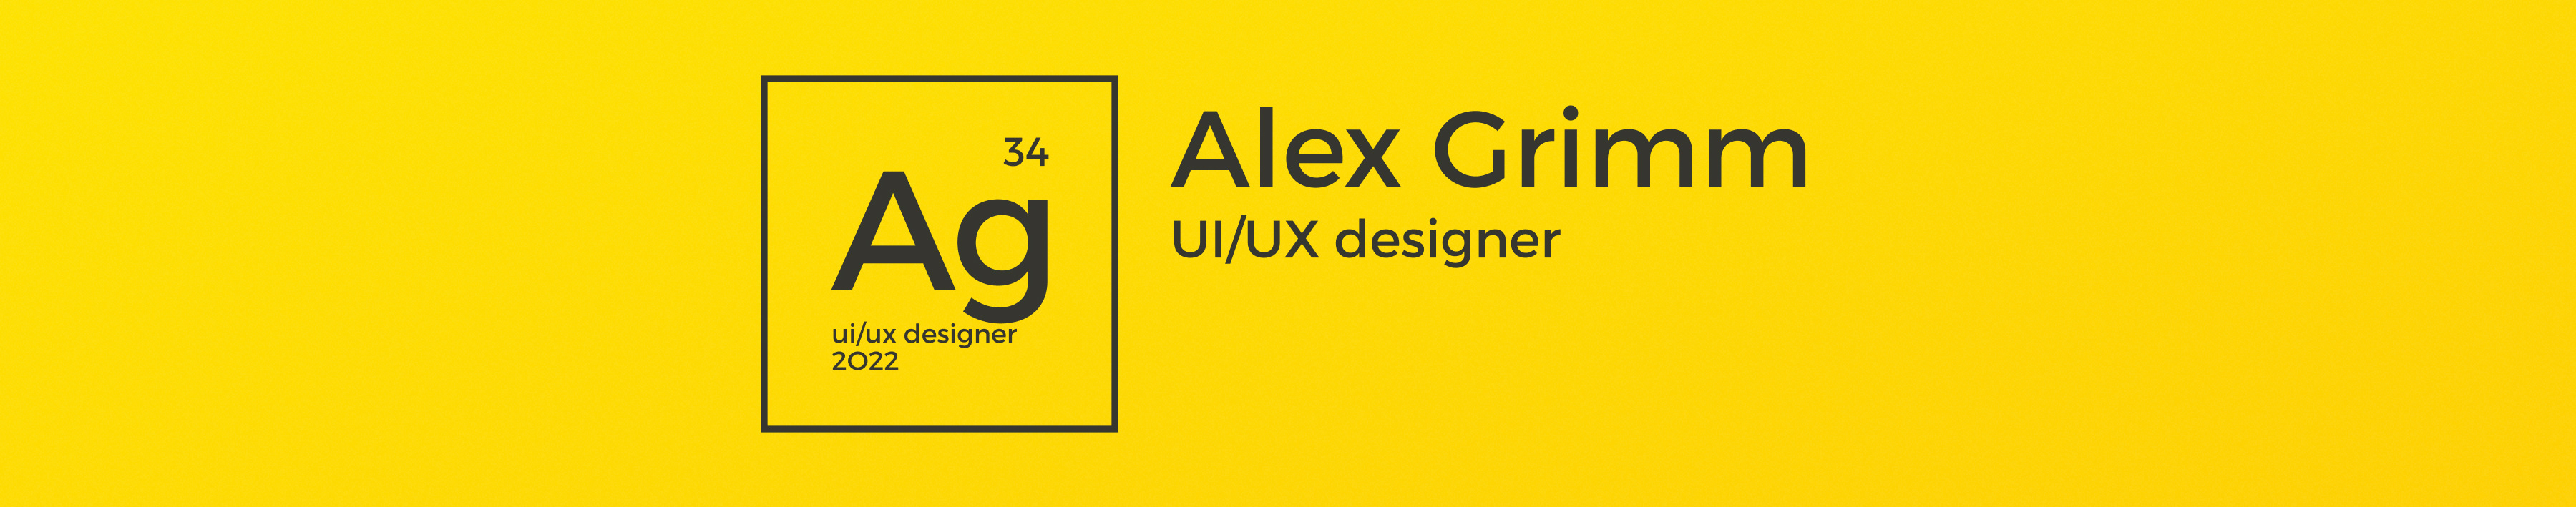 Banner de perfil de Alex Grimm